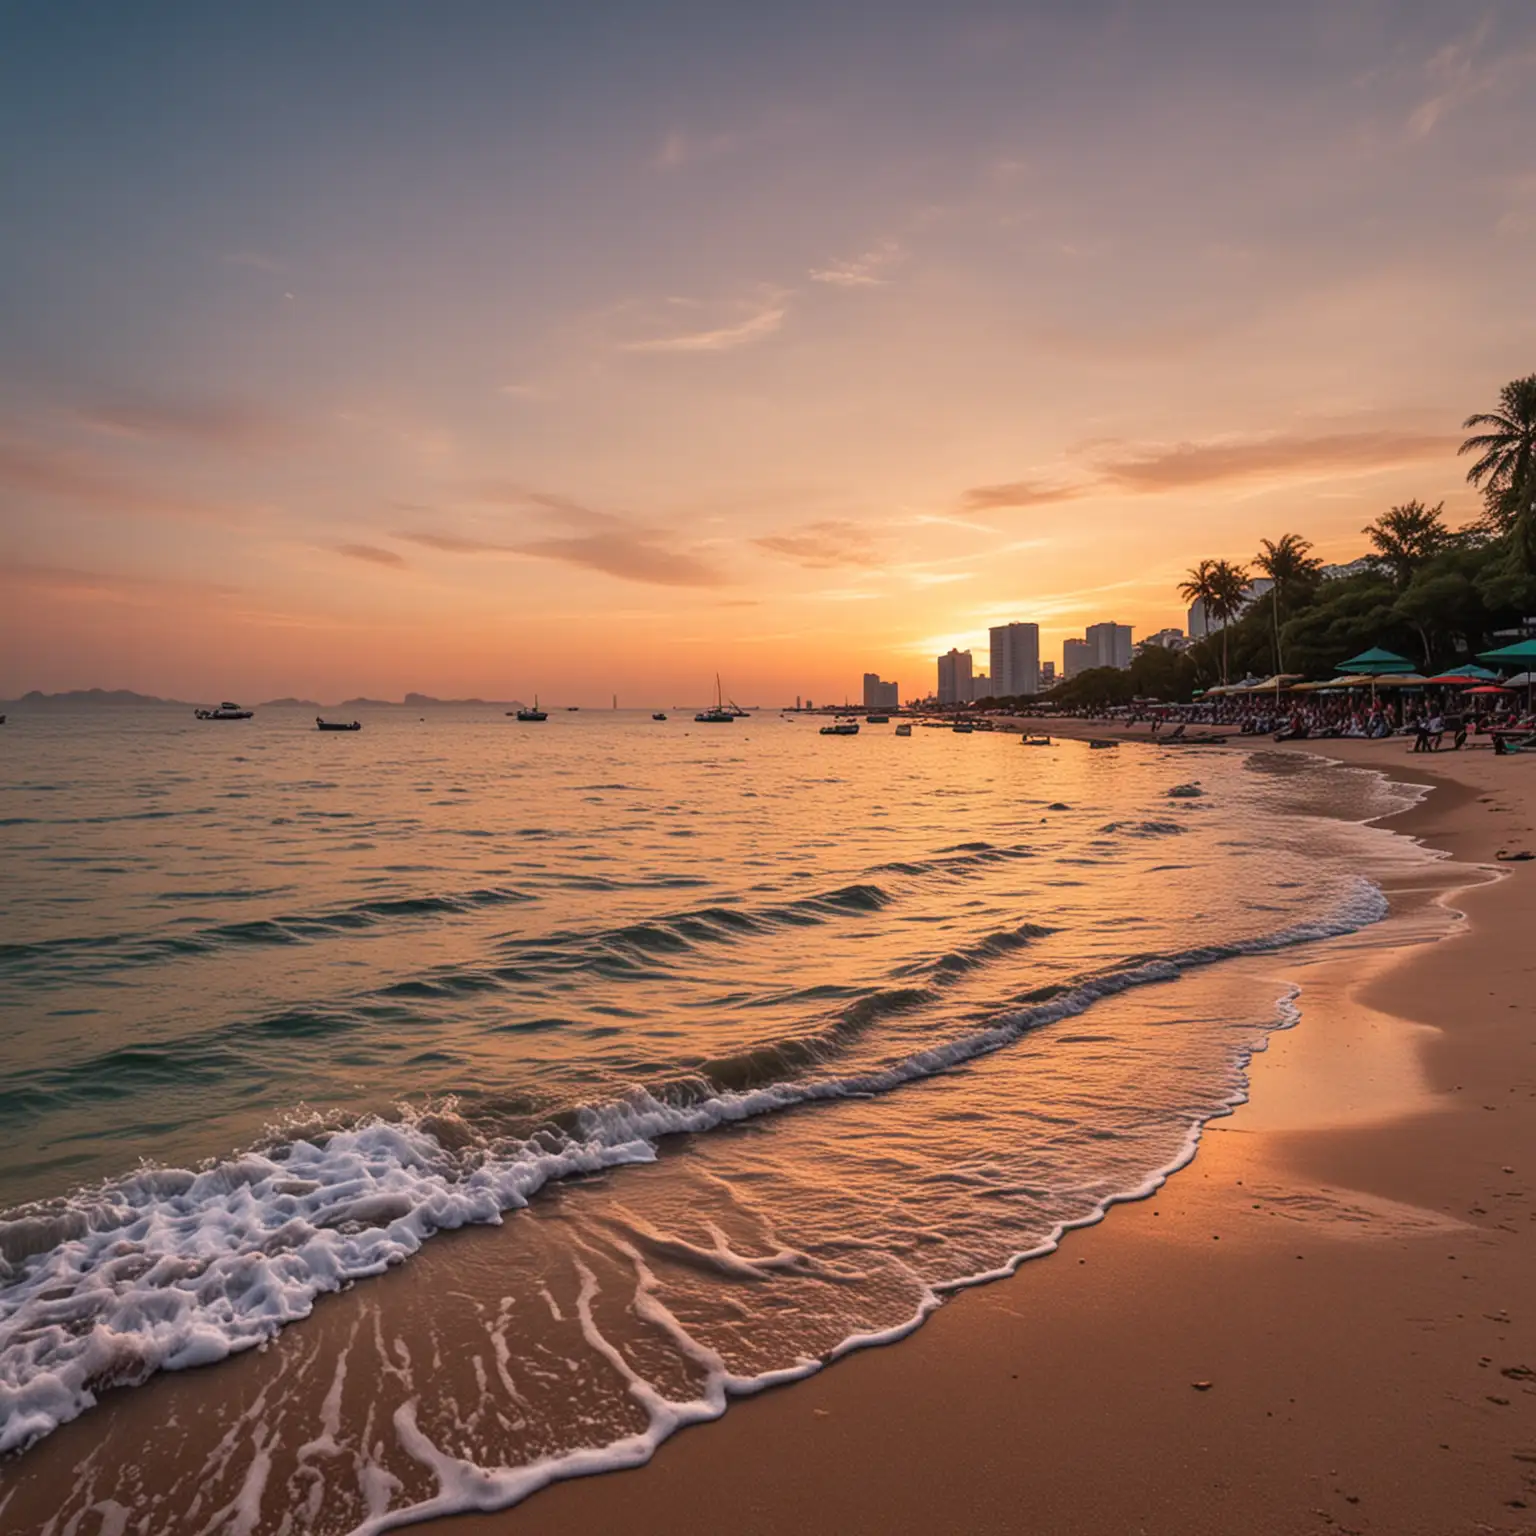 Scenery of Pattaya Beach Thailand during sunset